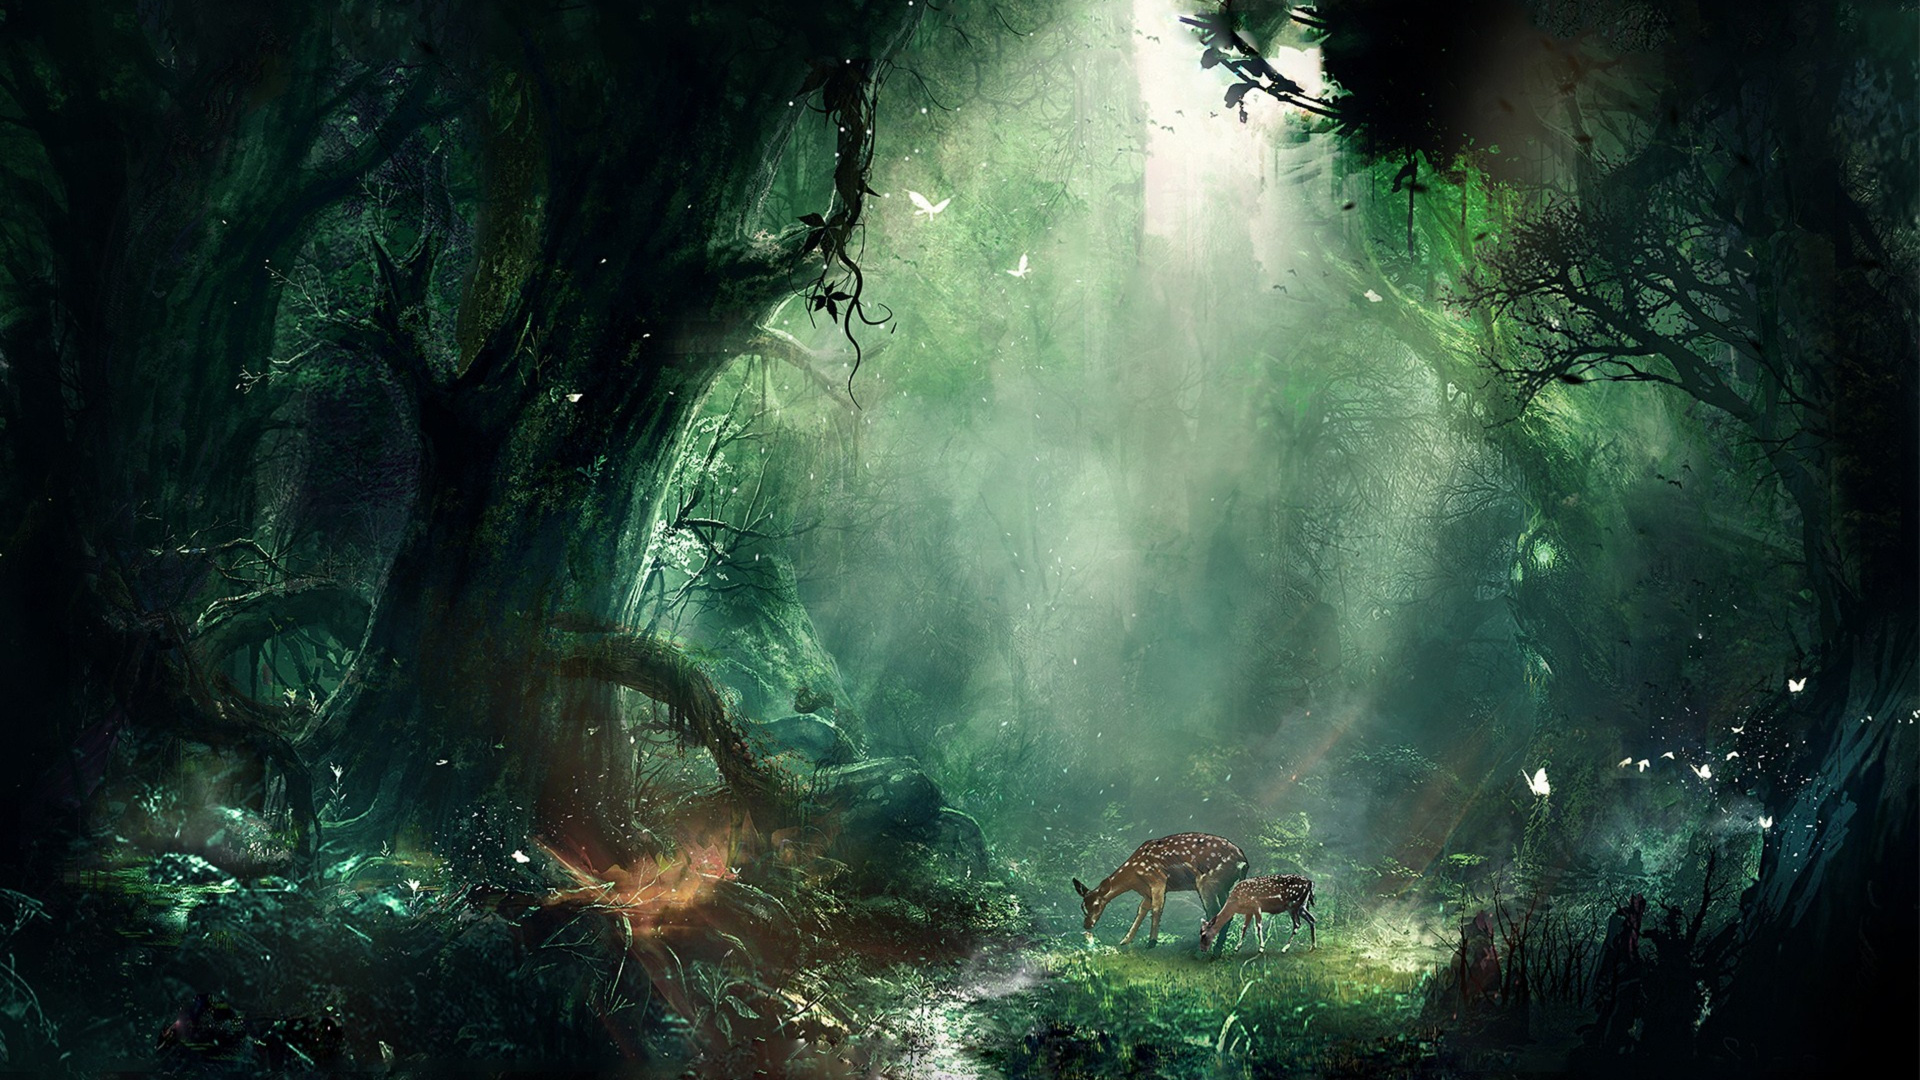 Dschungel, Natur, Gr, Natürlichen Umgebung, Vegetation. Wallpaper in 1920x1080 Resolution